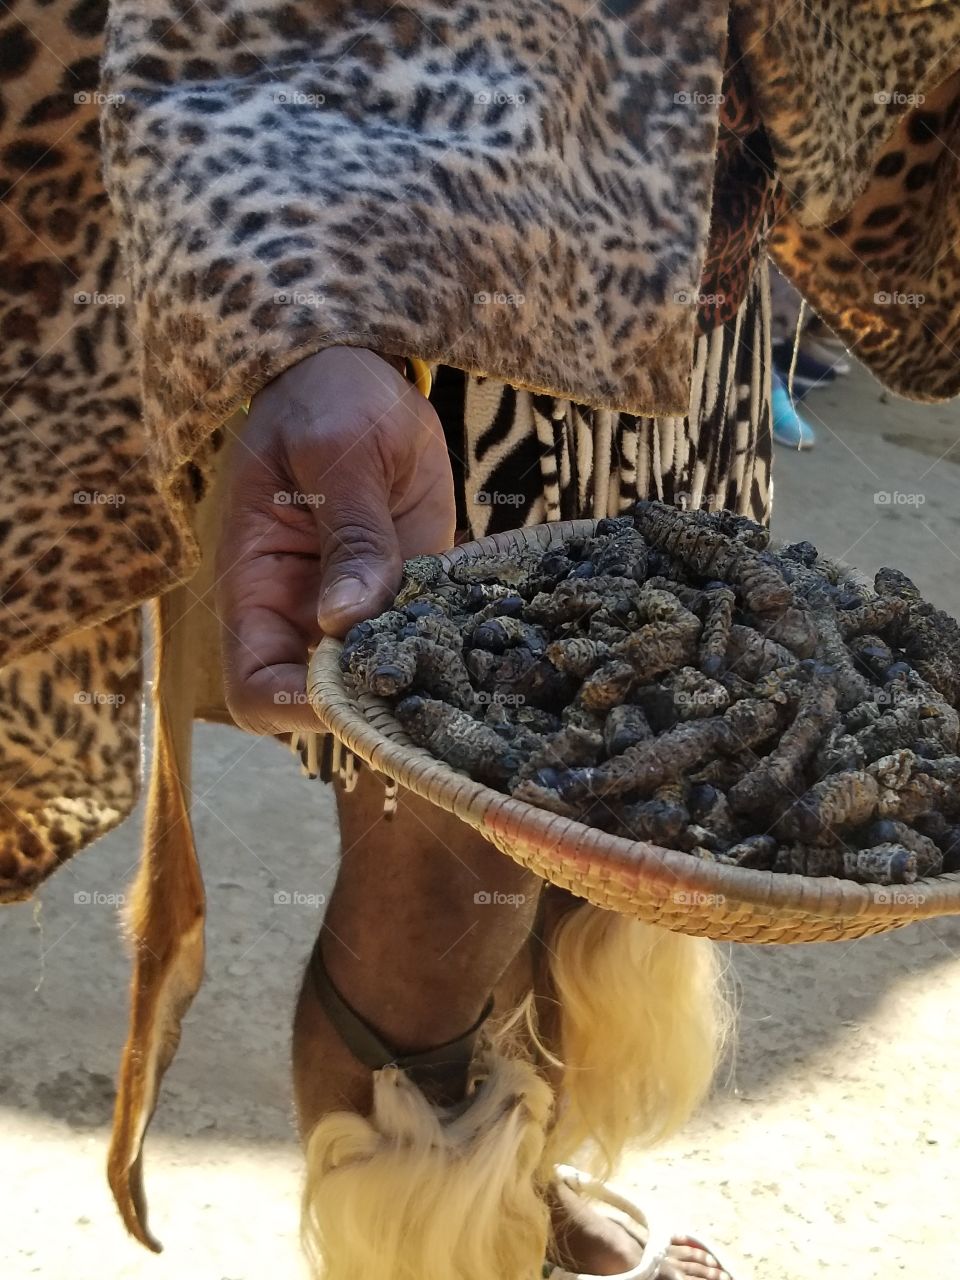 Mopane Worms, yum